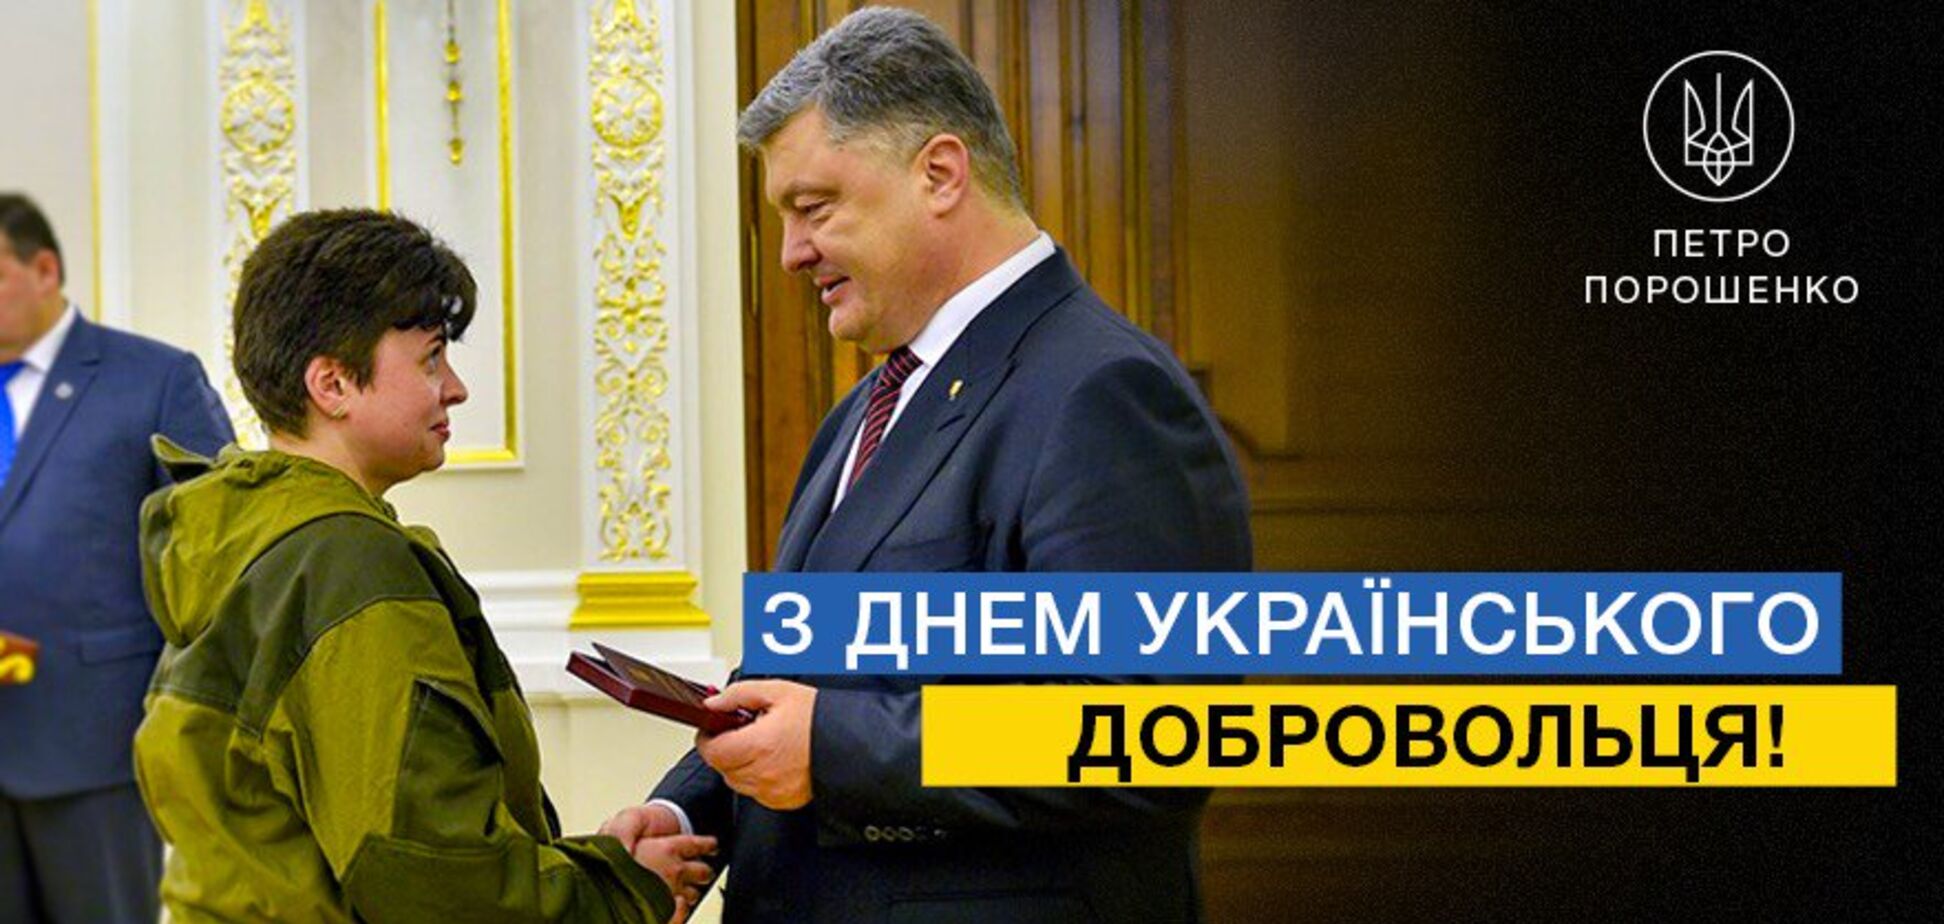 'Вы прошли ад': Порошенко искренне обратился к украинским добровольцам